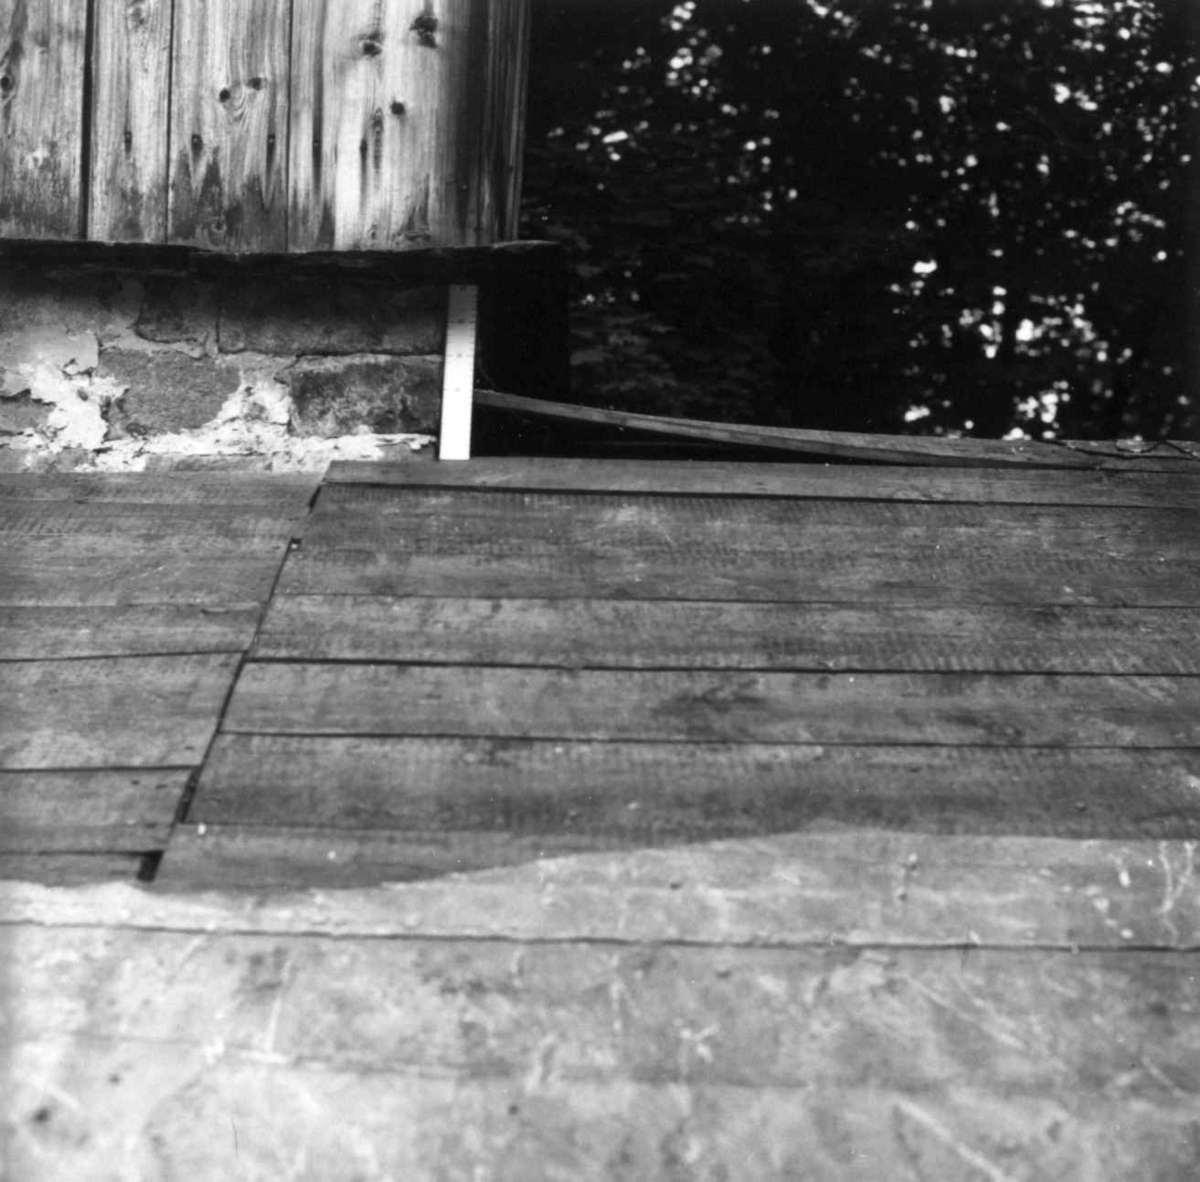 Hus fra Hovde, Ørlandet, Trøndelagstunet. Reparasjon, august 1981. Målet mellom bordtaket og dråpehella på pipa. Pipa har ikke seget i forhold til huset ellers.